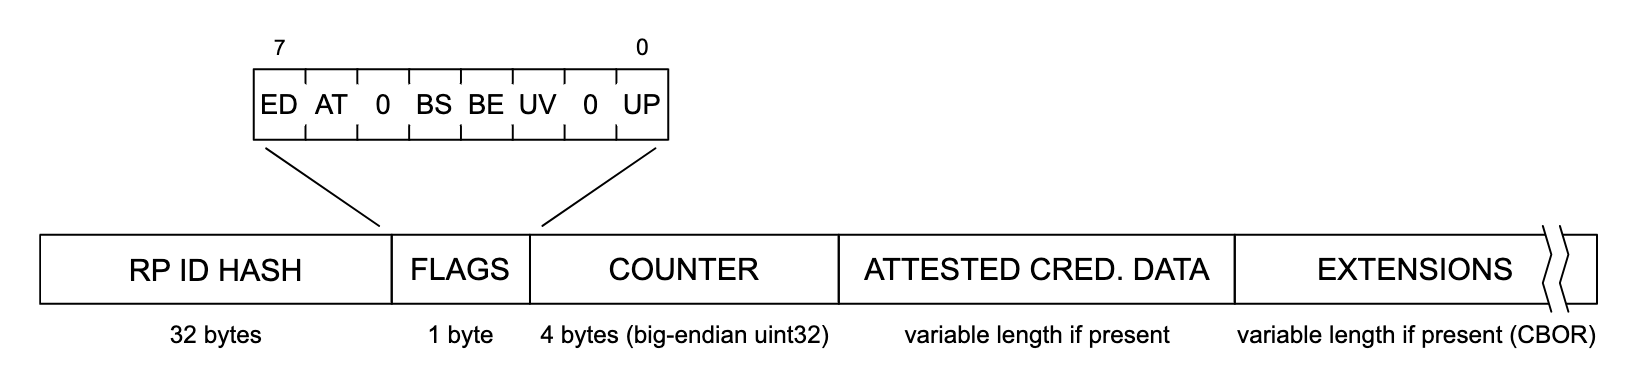 تصویری از ساختار داده های احراز هویت. از چپ به راست، هر بخش از ساختار داده "RP ID HASH" (32 بایت)، "FLAGS" (1 بایت)، "COUNTER" (4 بایت، big-endian uint32)، "ATTESTE CRED" خوانده می شود. DATA (طول متغیر در صورت وجود)، و «EXTENSIONS» (طول متغیر در صورت وجود (CBOR)). بخش «FLAGS» برای نشان دادن فهرستی از پرچم‌های احتمالی، با برچسب‌گذاری از چپ به راست، گسترش می‌یابد: «ED»، «AT»، «0»، «BS»، «BE»، «UV»، «0»، و "بالا".